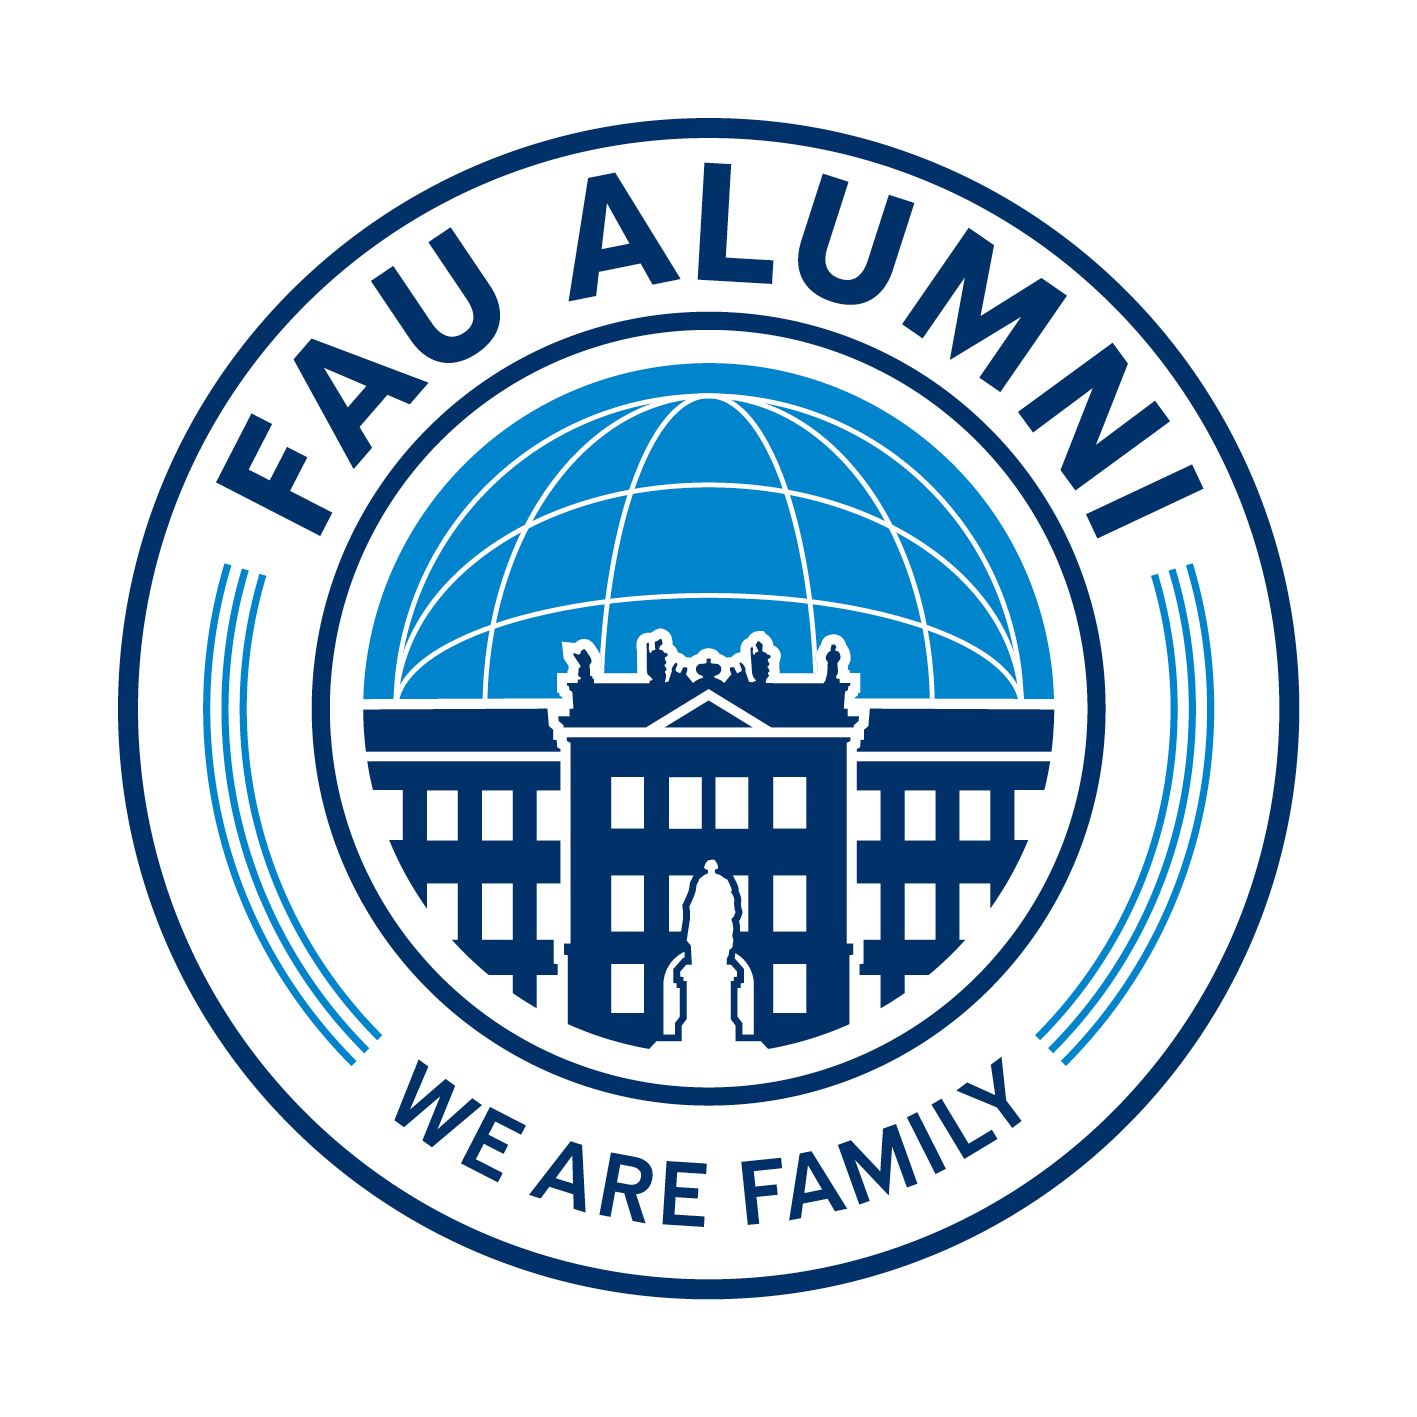 FAU ALUMNI - WE ARE FAMILY